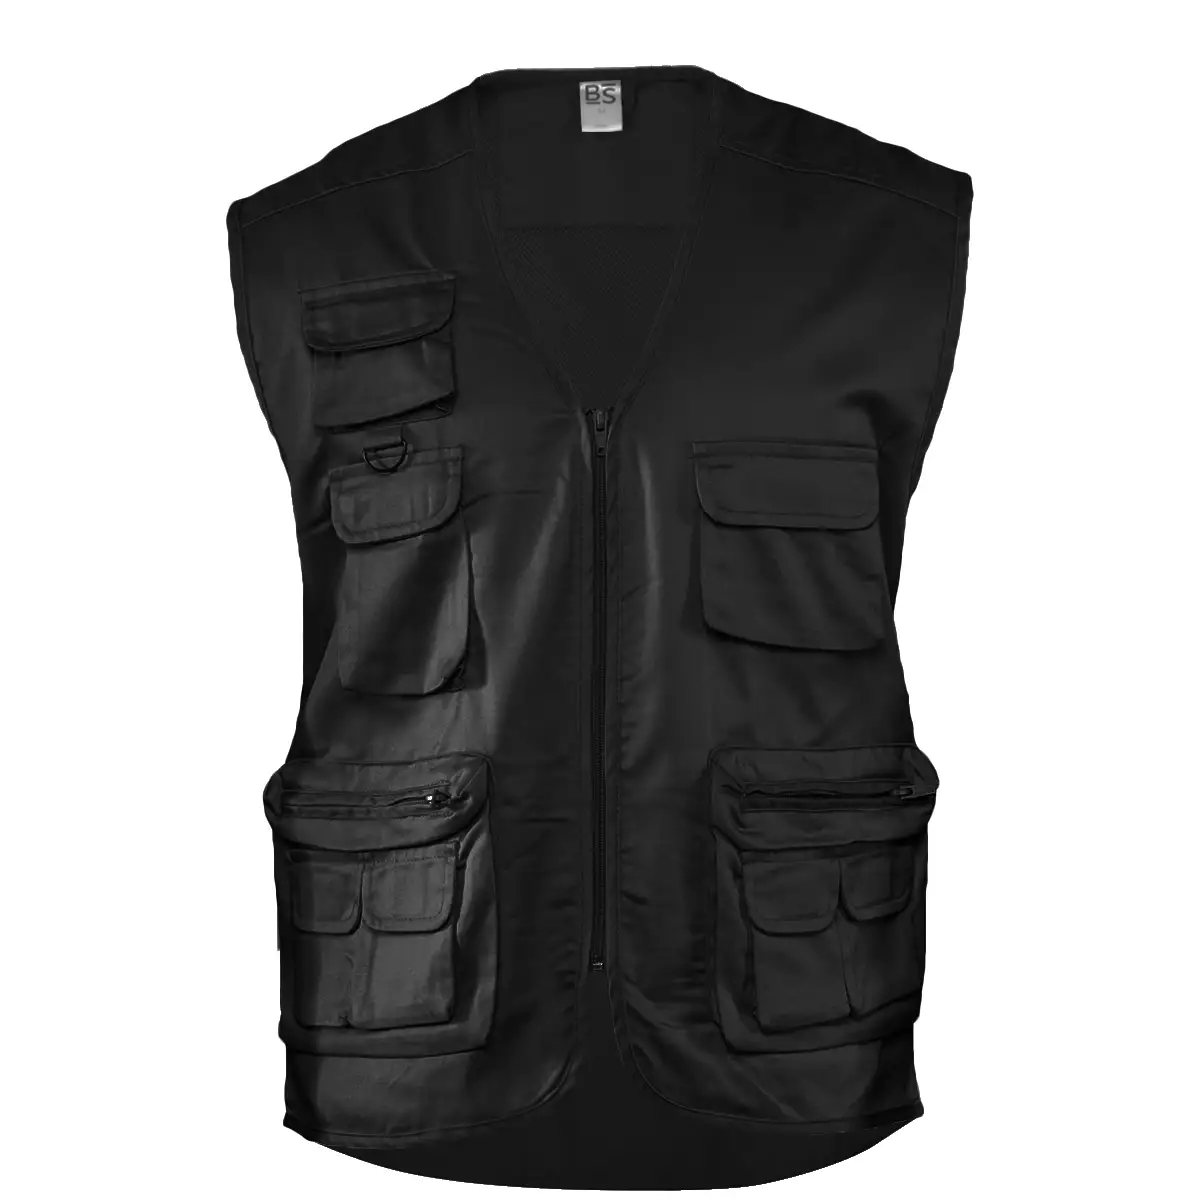 Gilet Poliestere/Cotone Nove Tasche Personalizzato Ideale come Capo da Lavoro, Sport, Tempo Libero